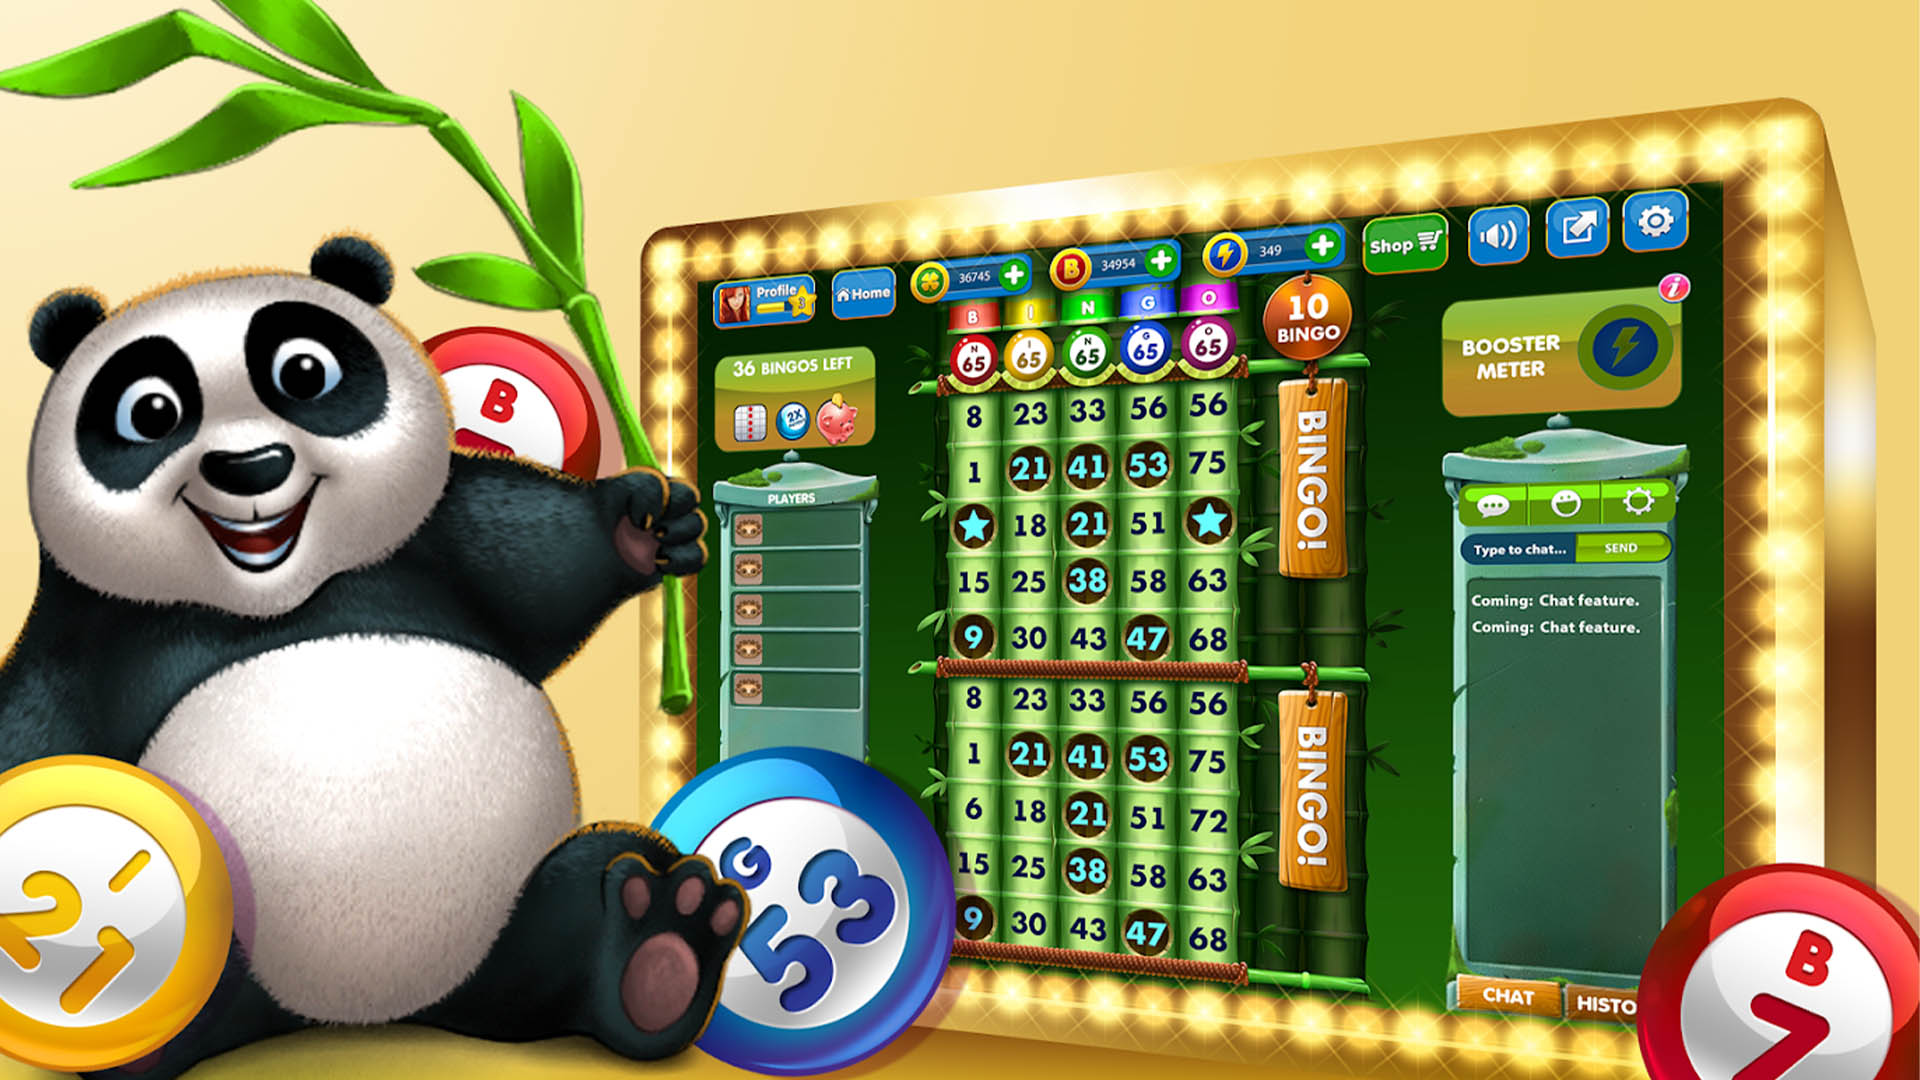 Bingo - Offline Bingo Games - Apps on Google Play